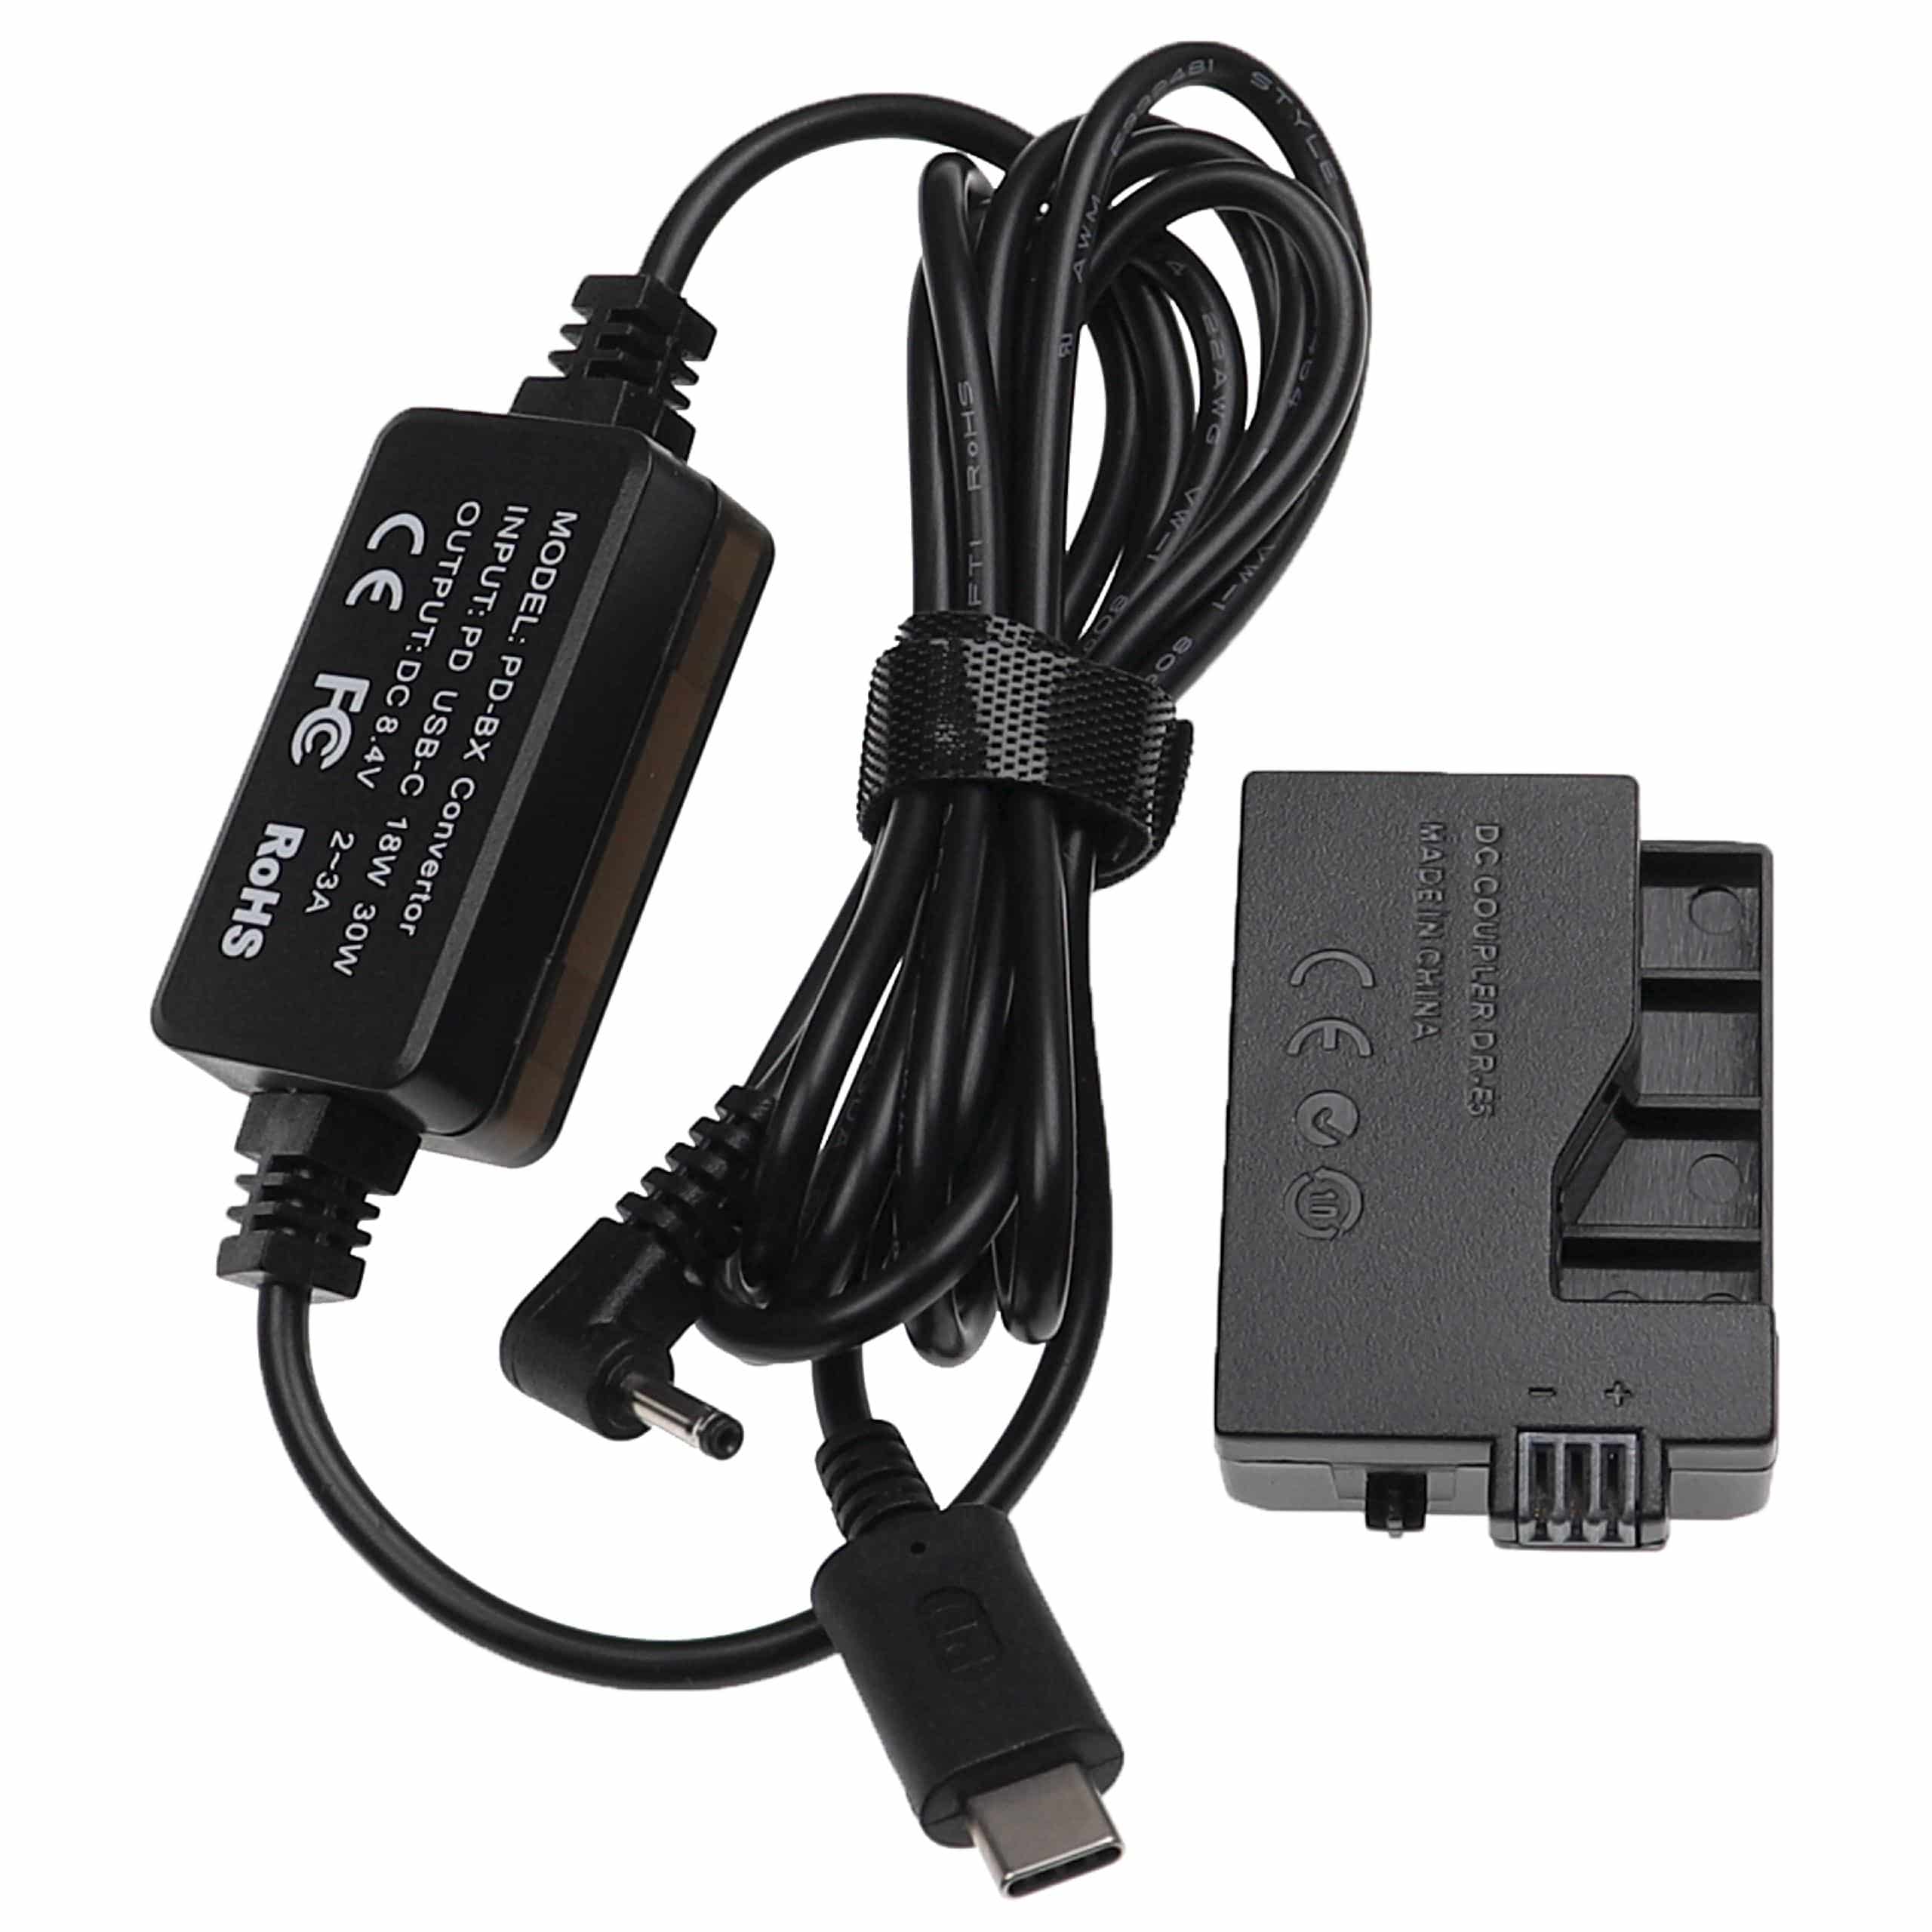 USB Power Supply replaces ACK-E5 for Camera + DC Coupler as Canon DR-E5 - 2 m, 8.4 V 3.0 A